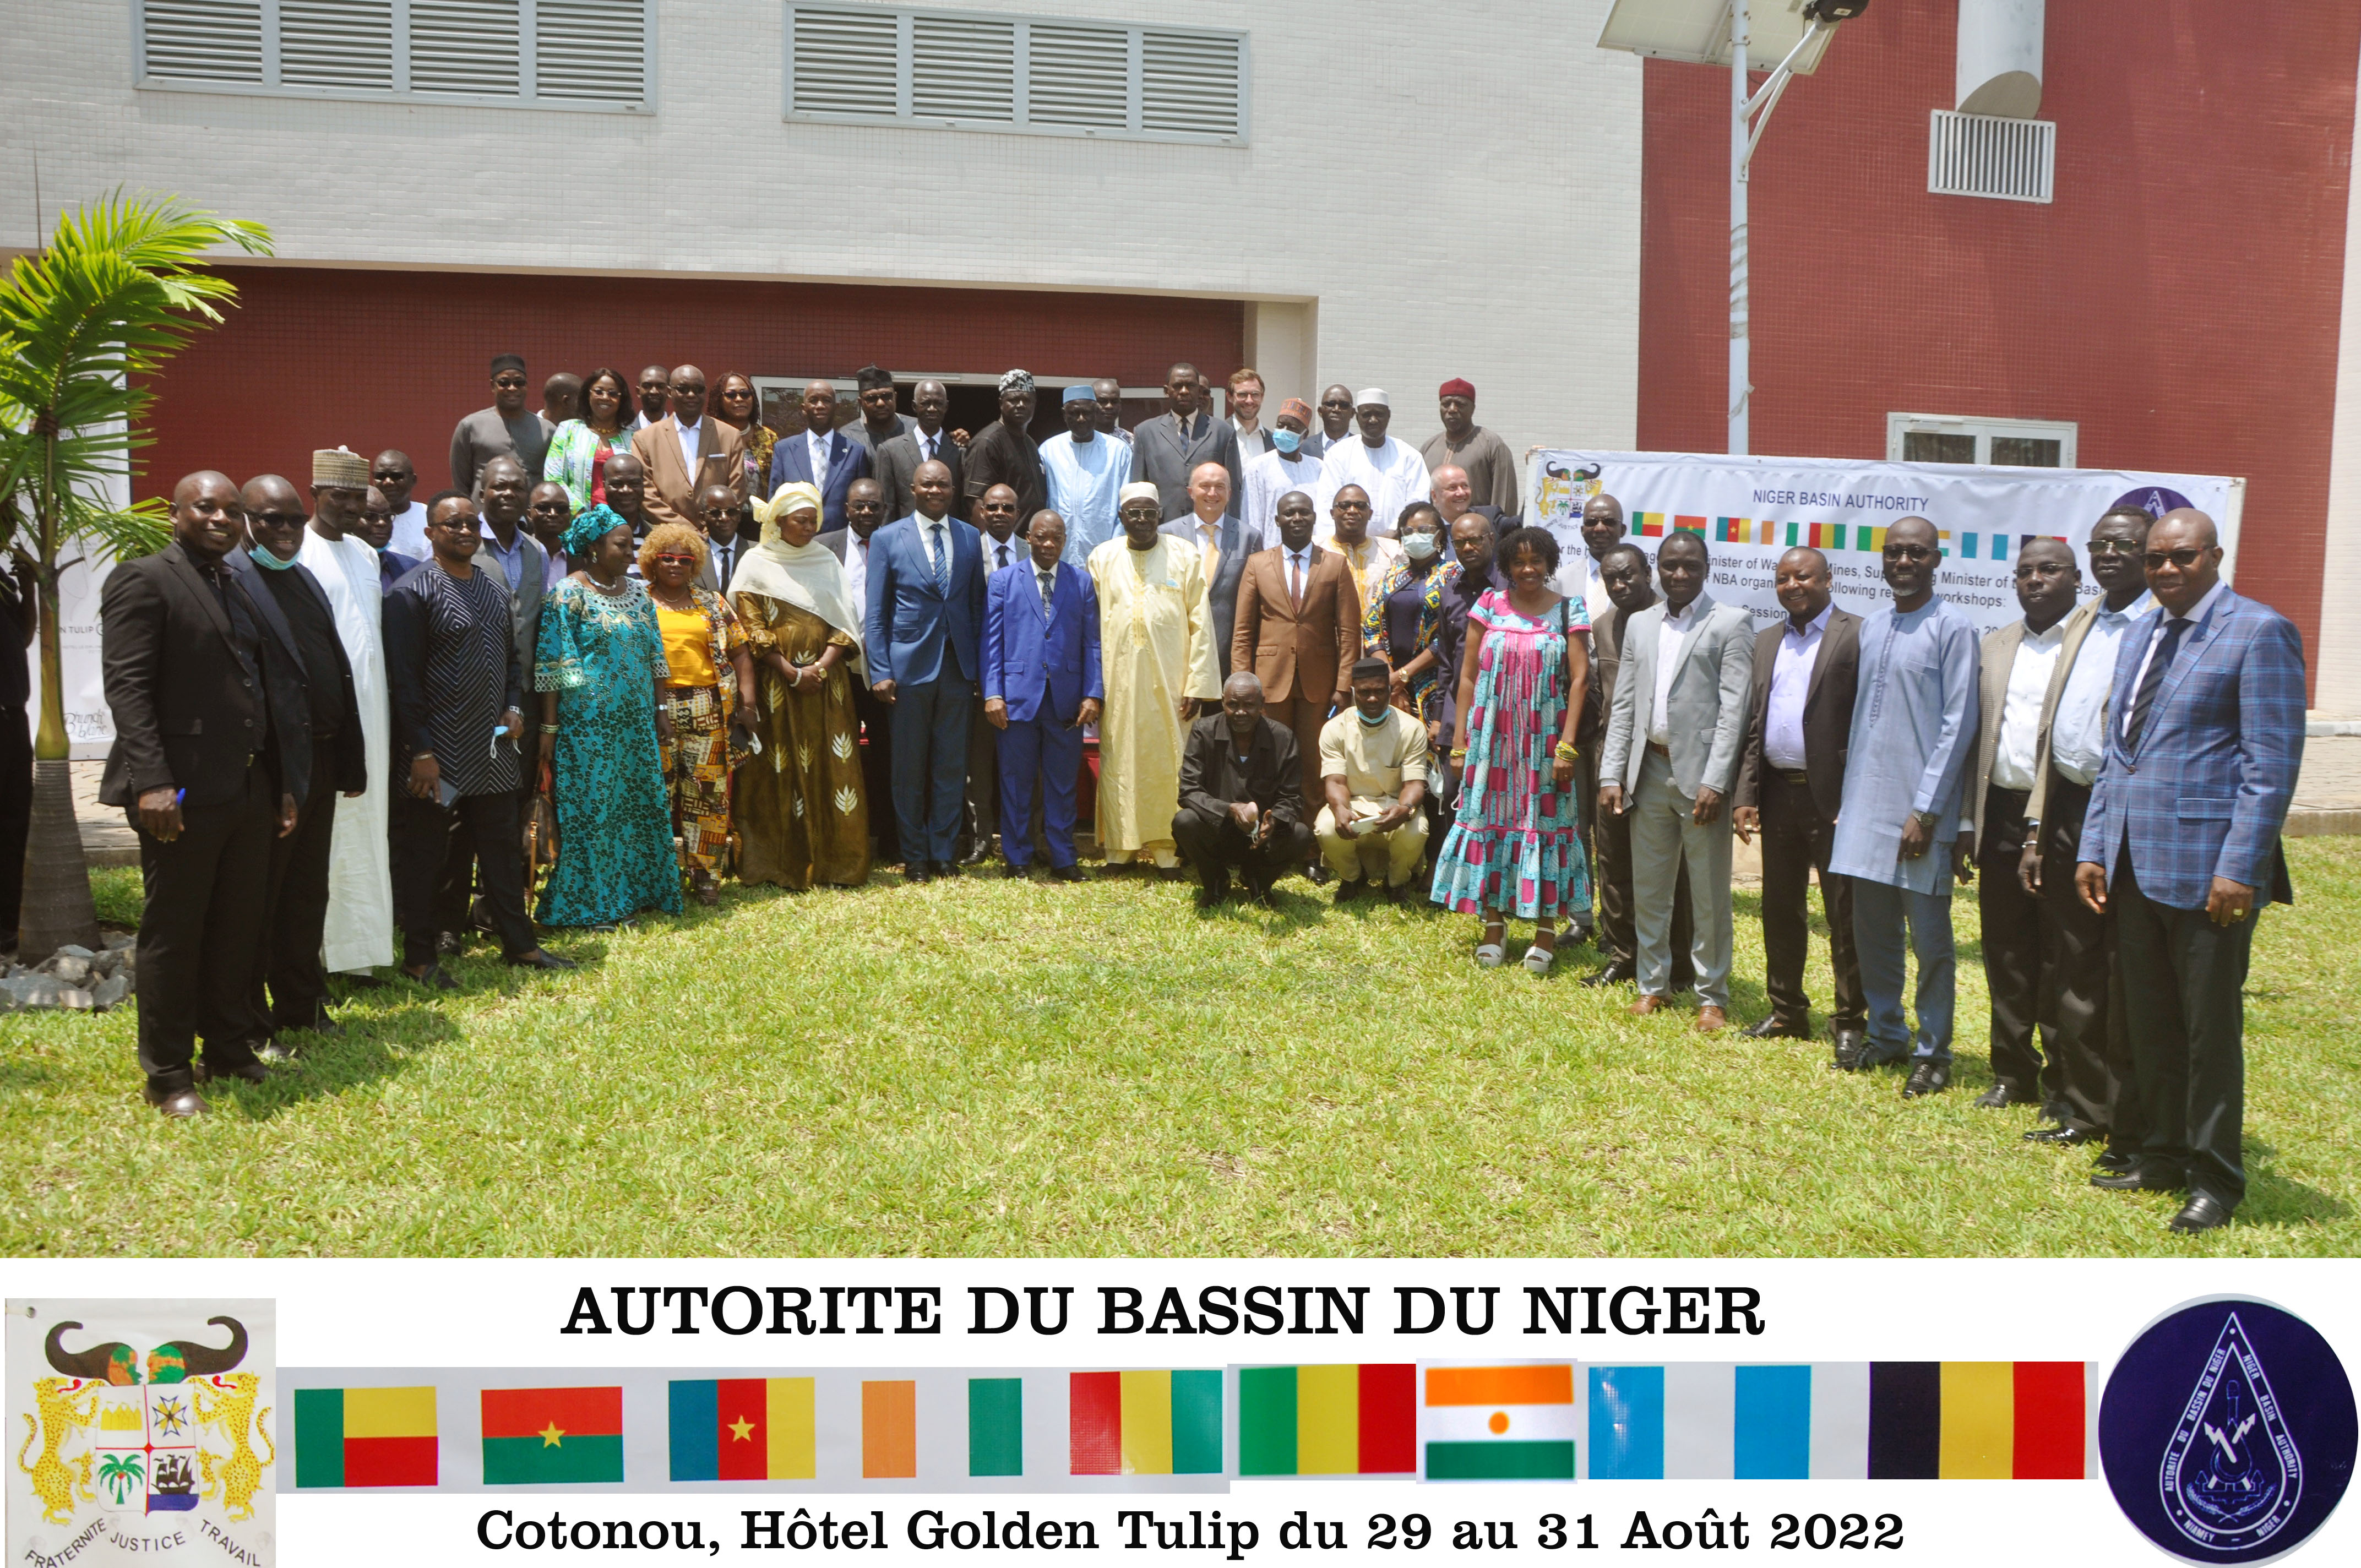  Cotonou accueille la session 2022 du Comité Régional de Pilotage des projets et Programmes de l’Autorité du Bassin du Niger, 29-31 août 2022 